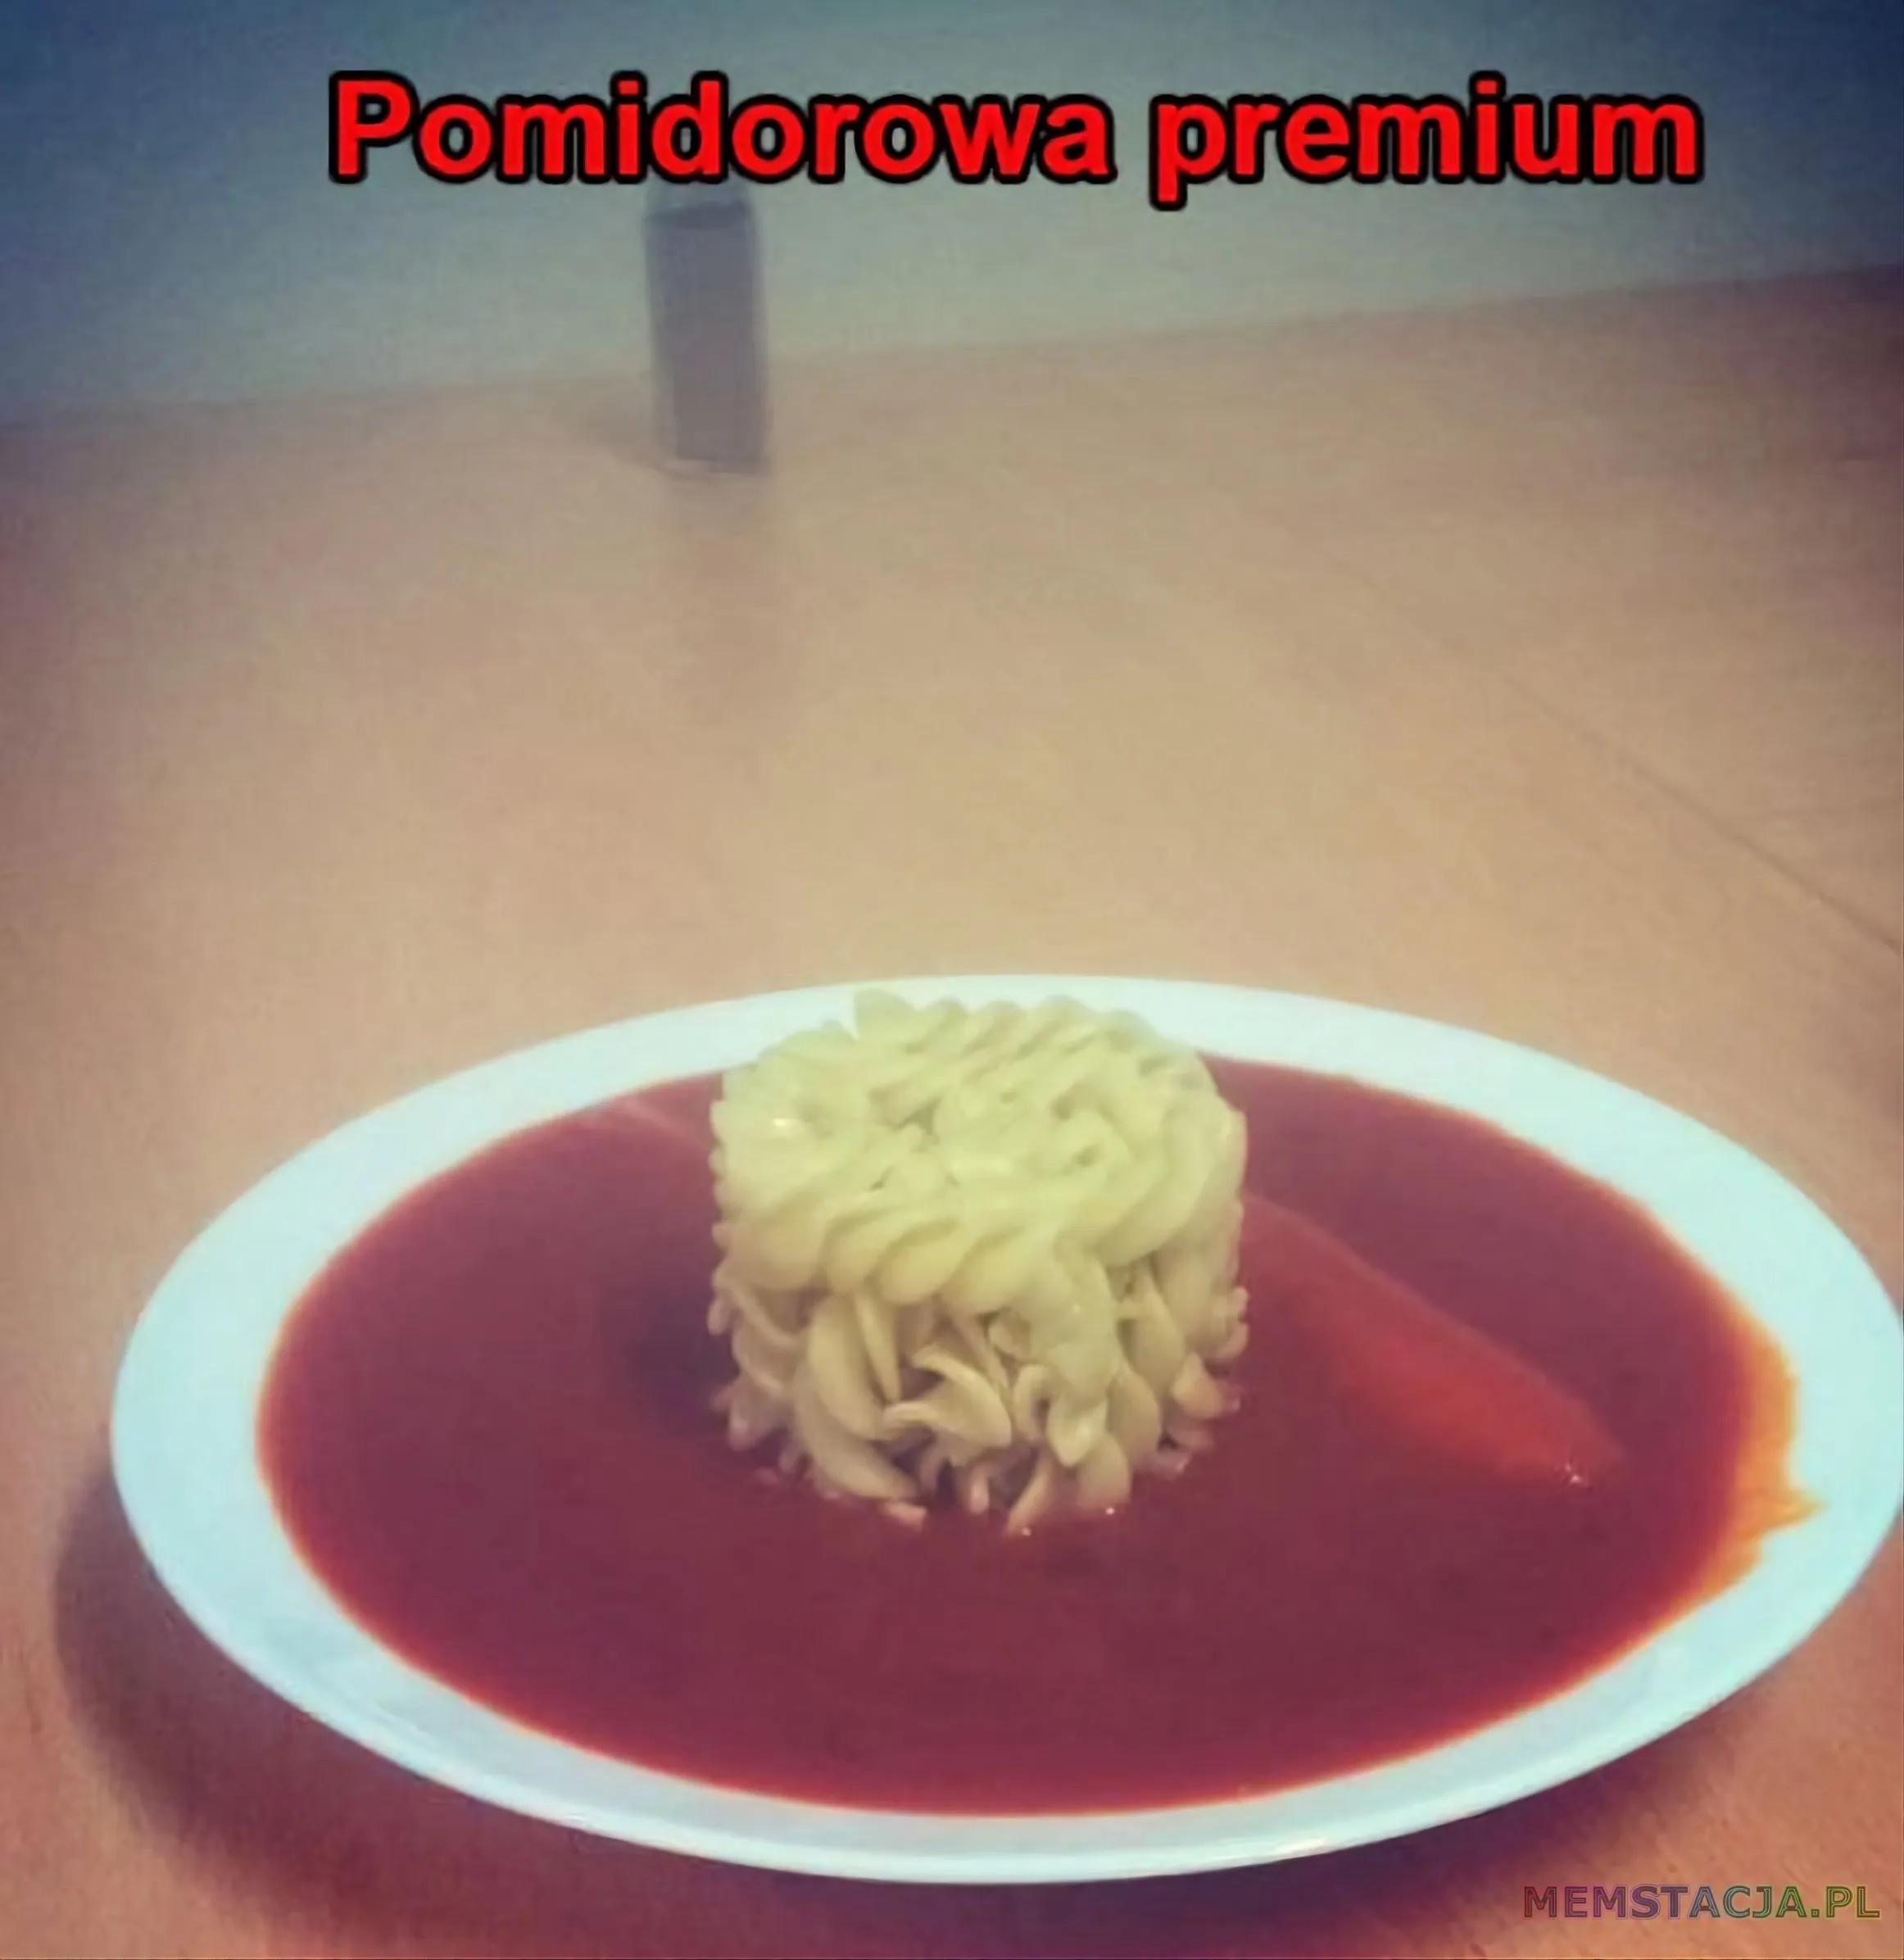 Mem przedstawiający zupę pomidorową podaną jakby była pomidorową premium.